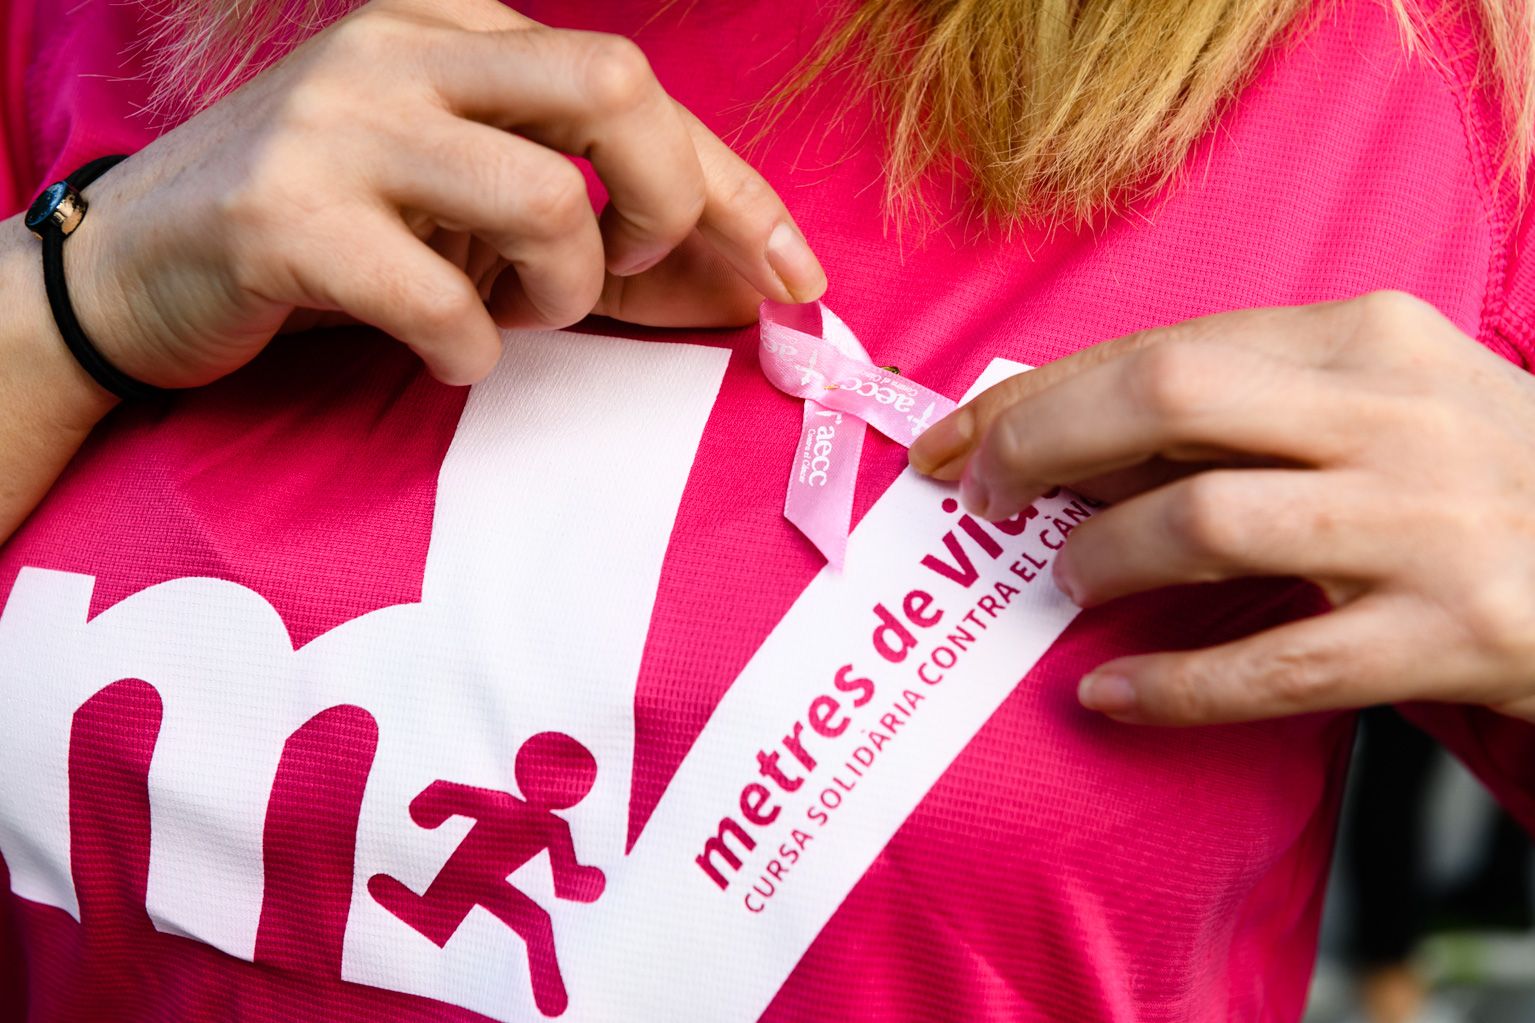 Dia del cáncer de mama caminada solidaria. Foto: Miguel López Mallach